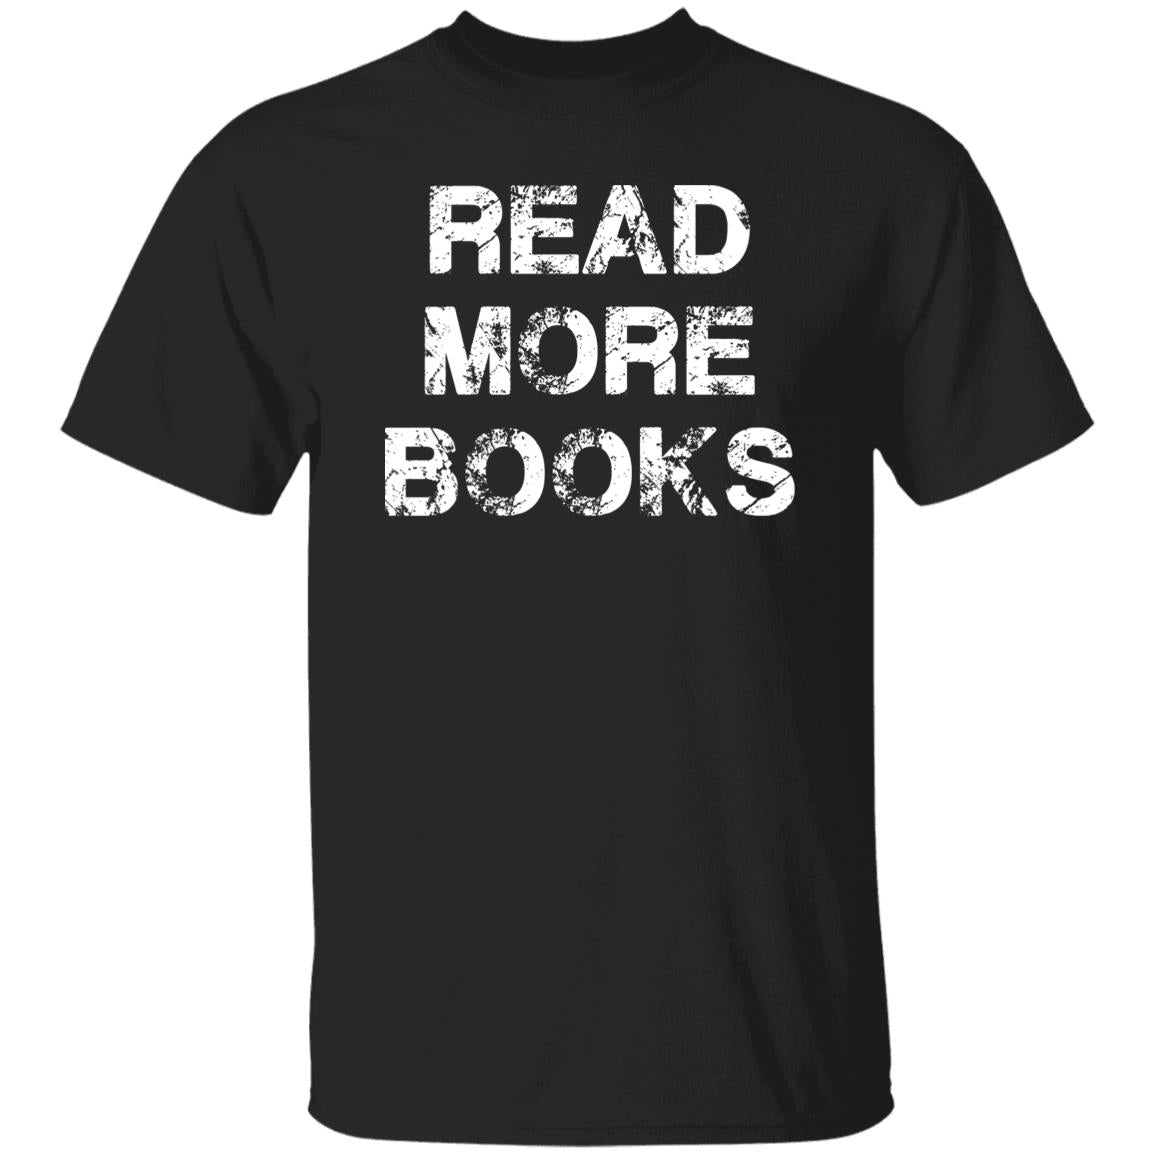 Read more books Unisex T-shirt Book lover, teacher tee black dark heather-Black-Family-Gift-Planet